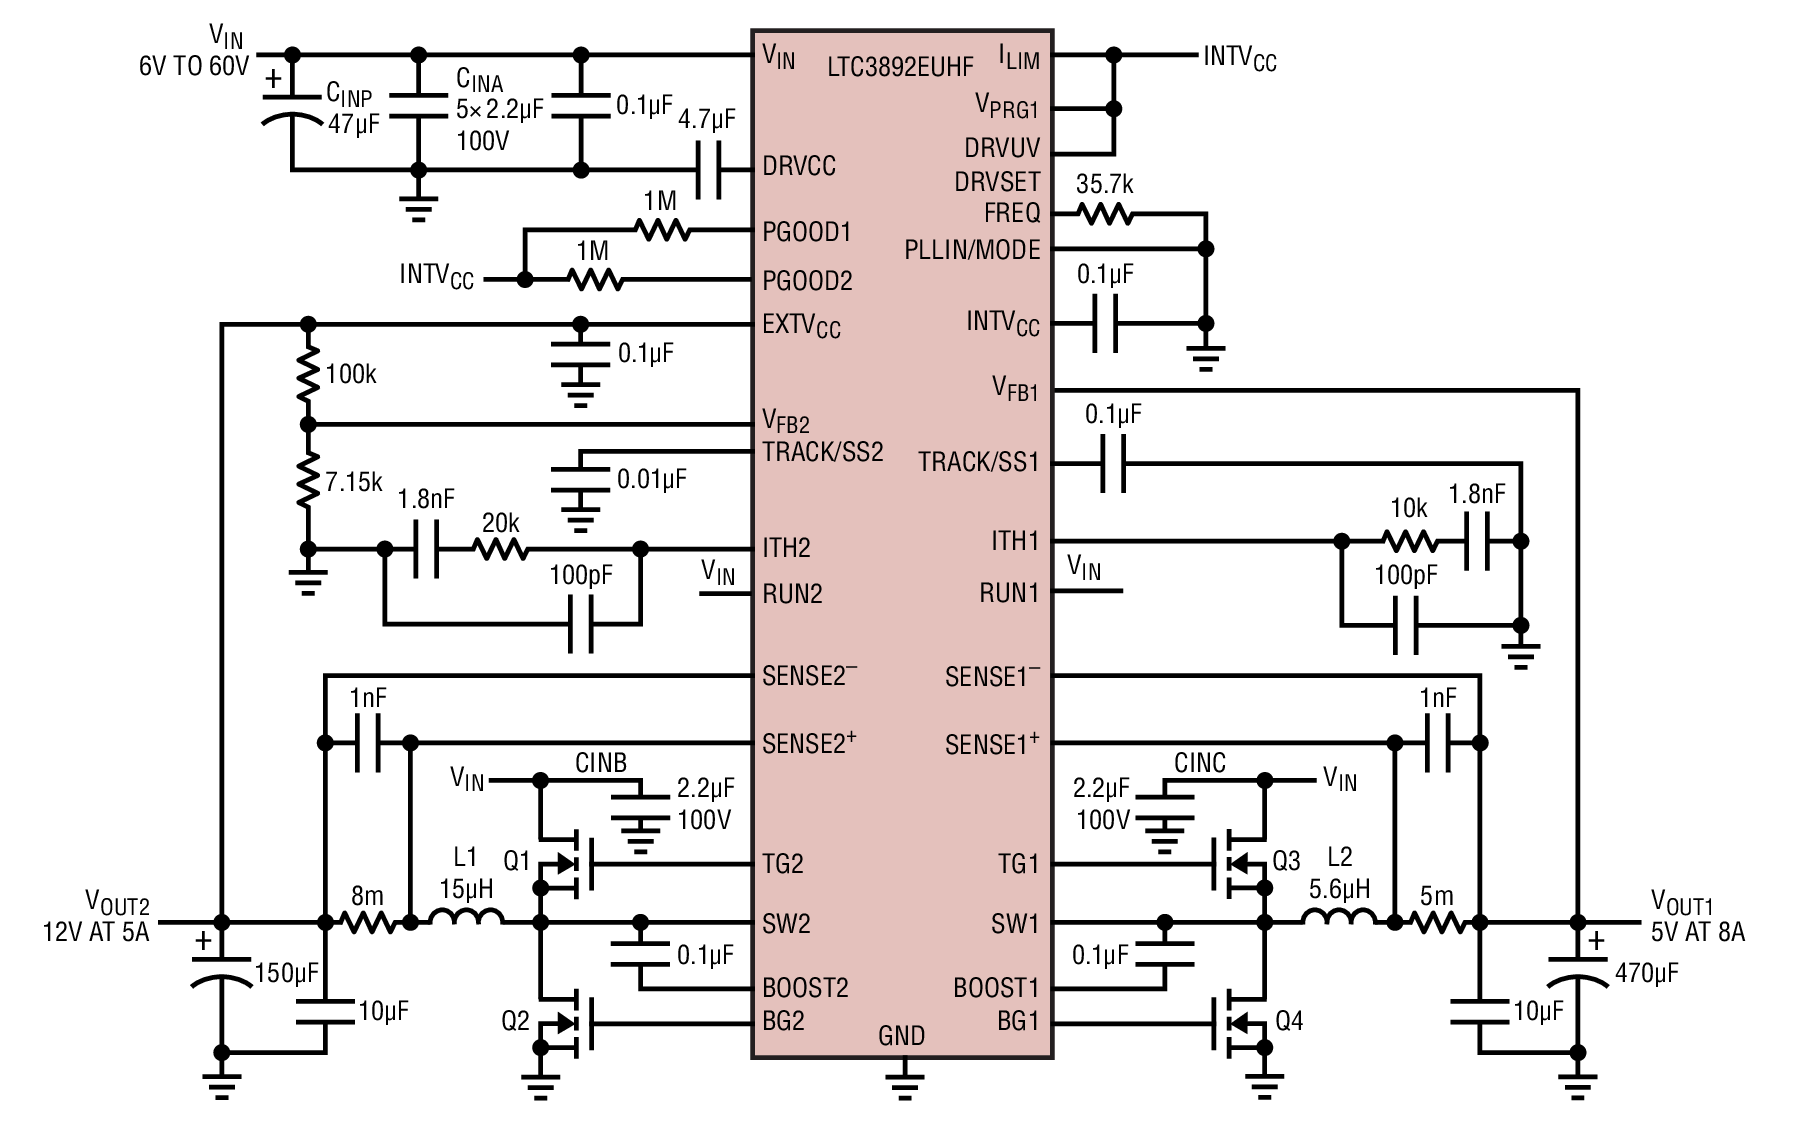 Figure 1. LTC3892, Dual Output DC/DC Converter Schematic